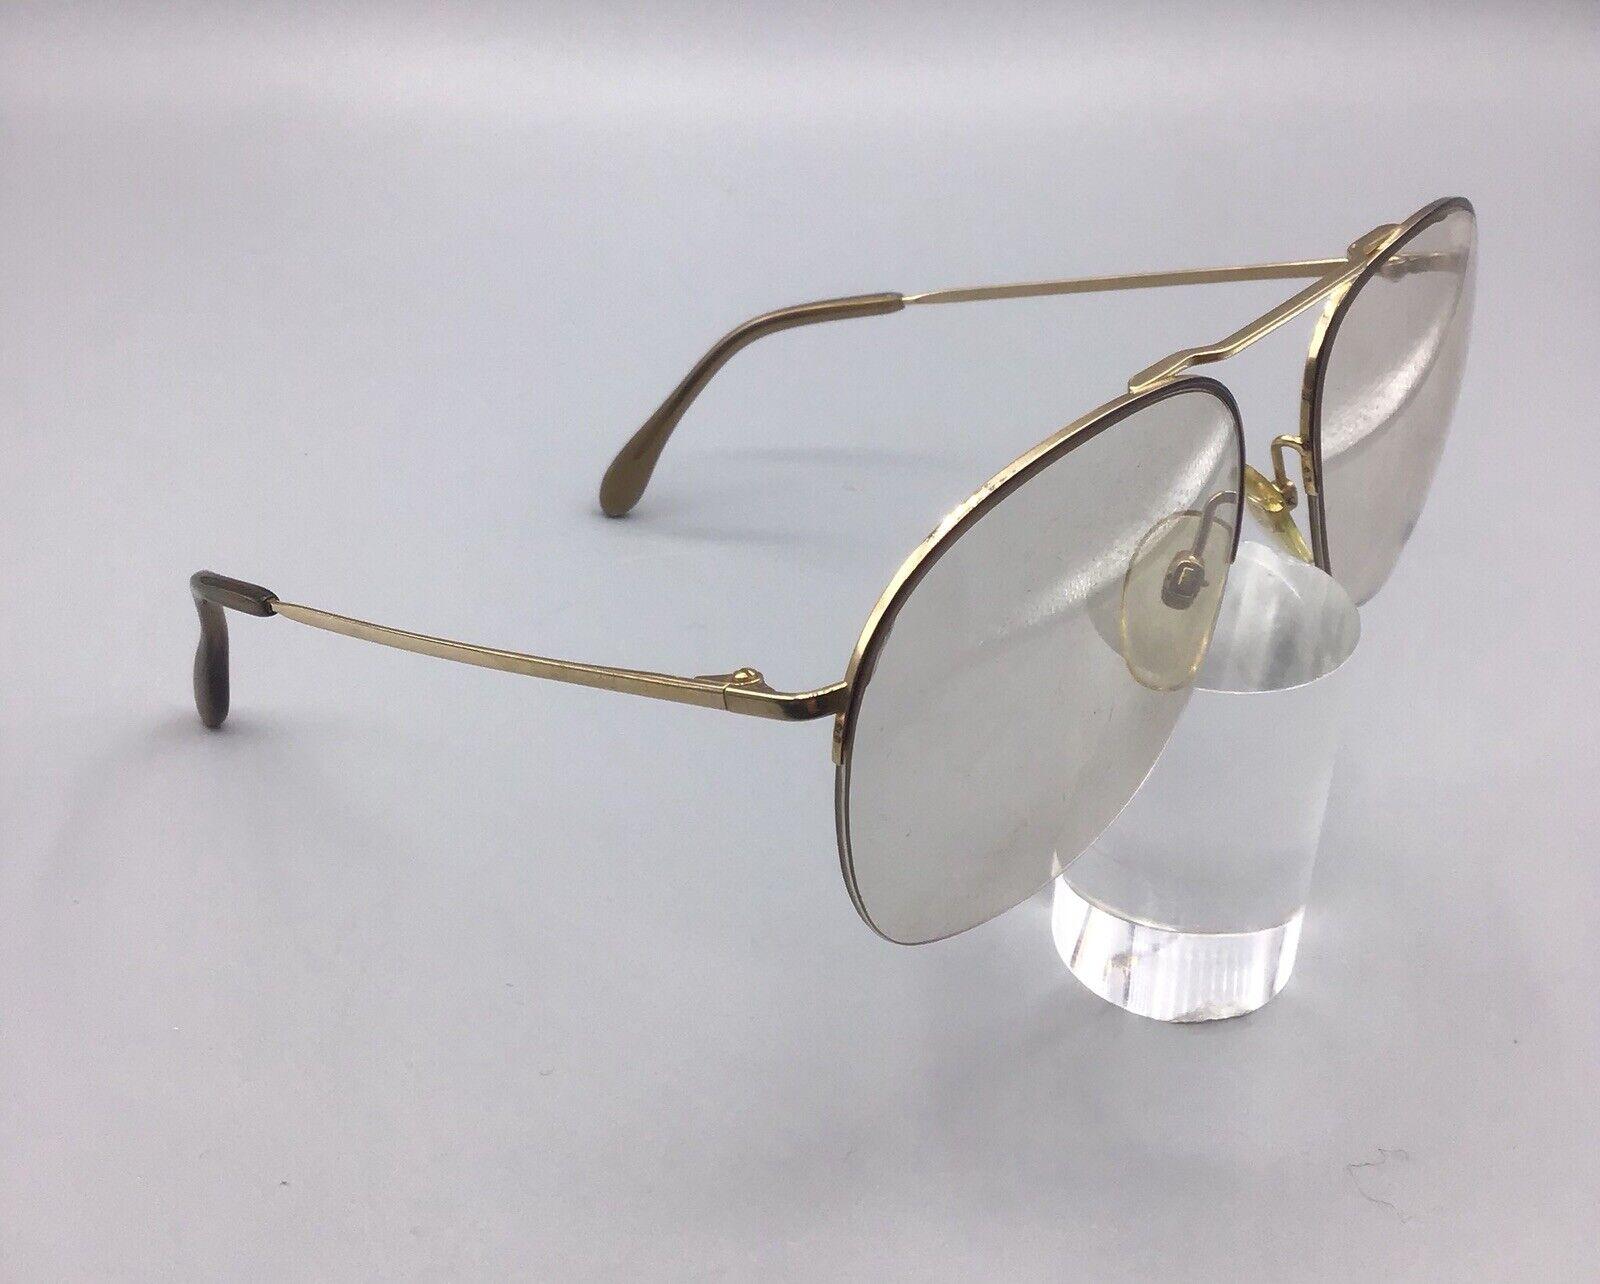 Rodenstock mar850b 18m occhiale vintage eyewear brillen frame oro gold